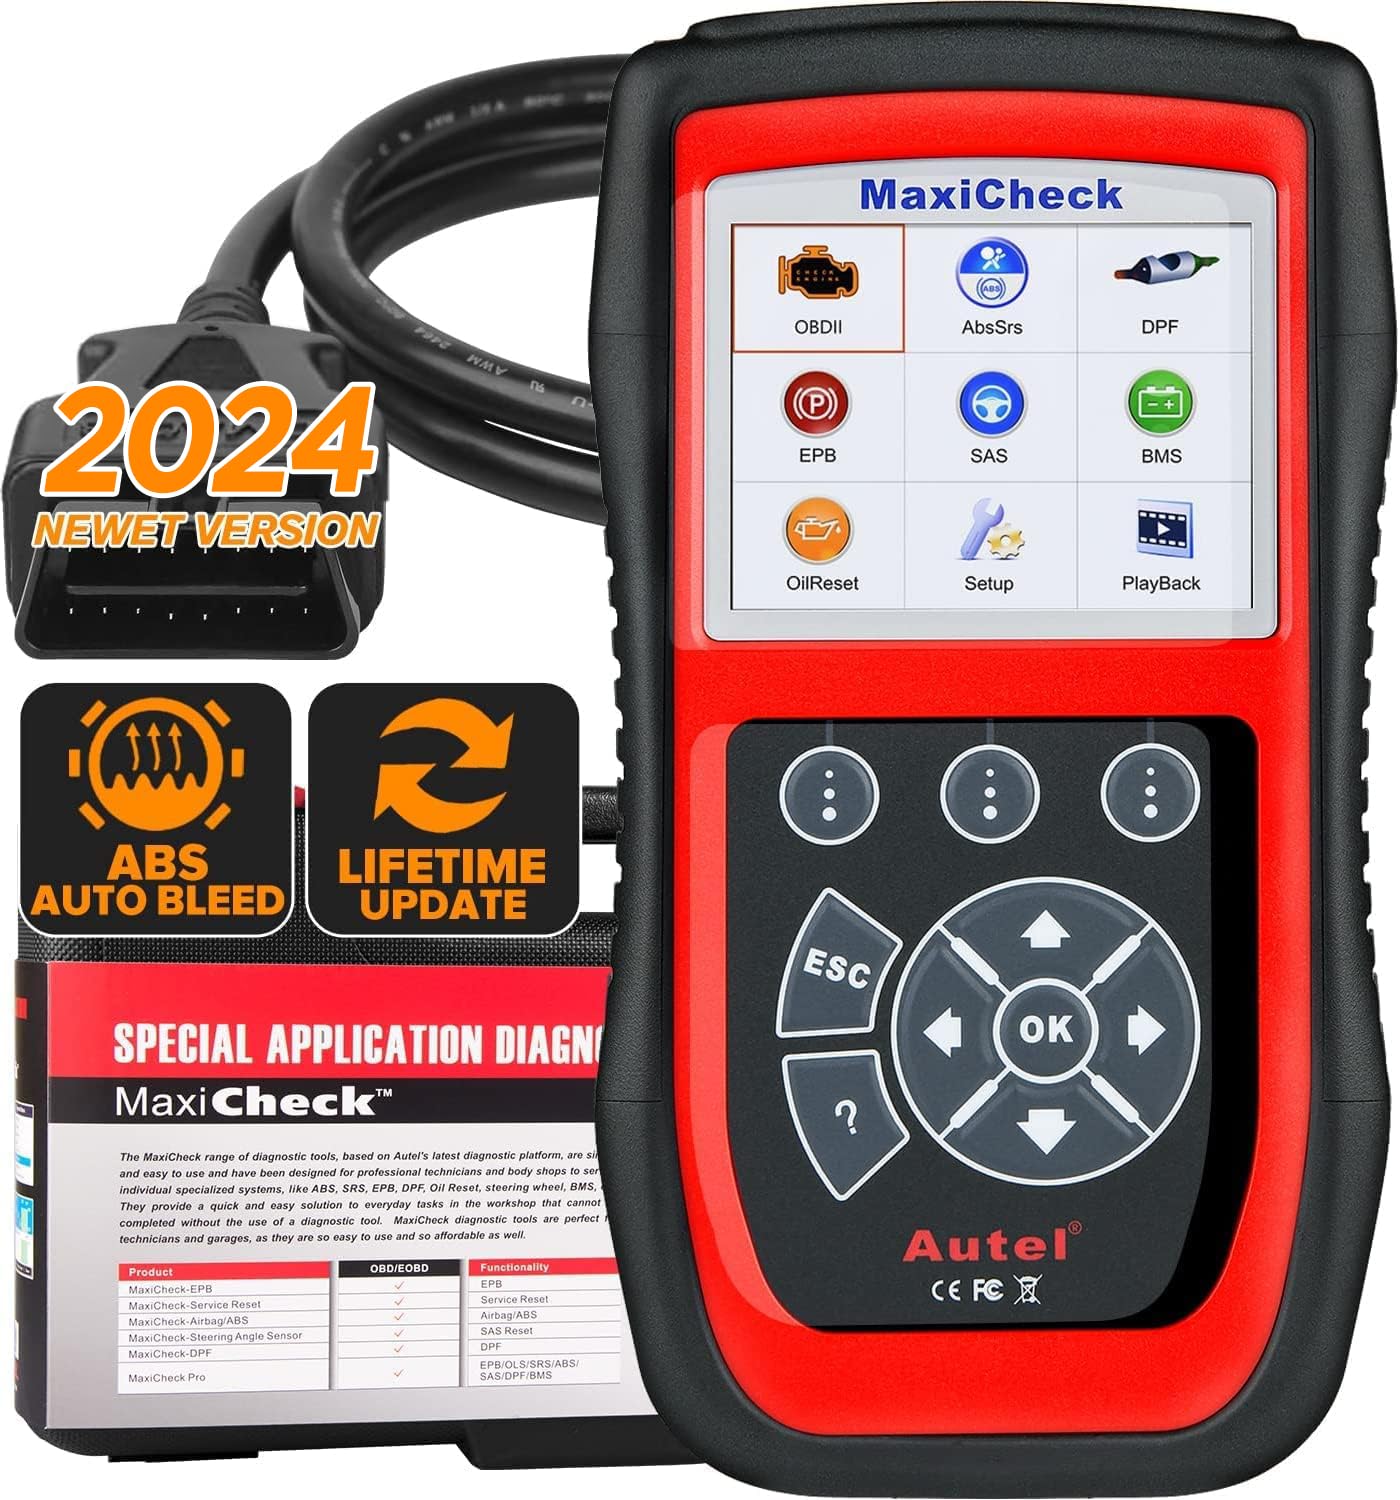 Autel MaxiCheck PRO ABS-Bleed-Scan-Tool mit ABS-SRS-Airbag-Diagnose, Ölrückstellung, EPB, SAS, BMS-Service für bestimmte Fahrzeuge (Olupart bis Baujahr 2015)